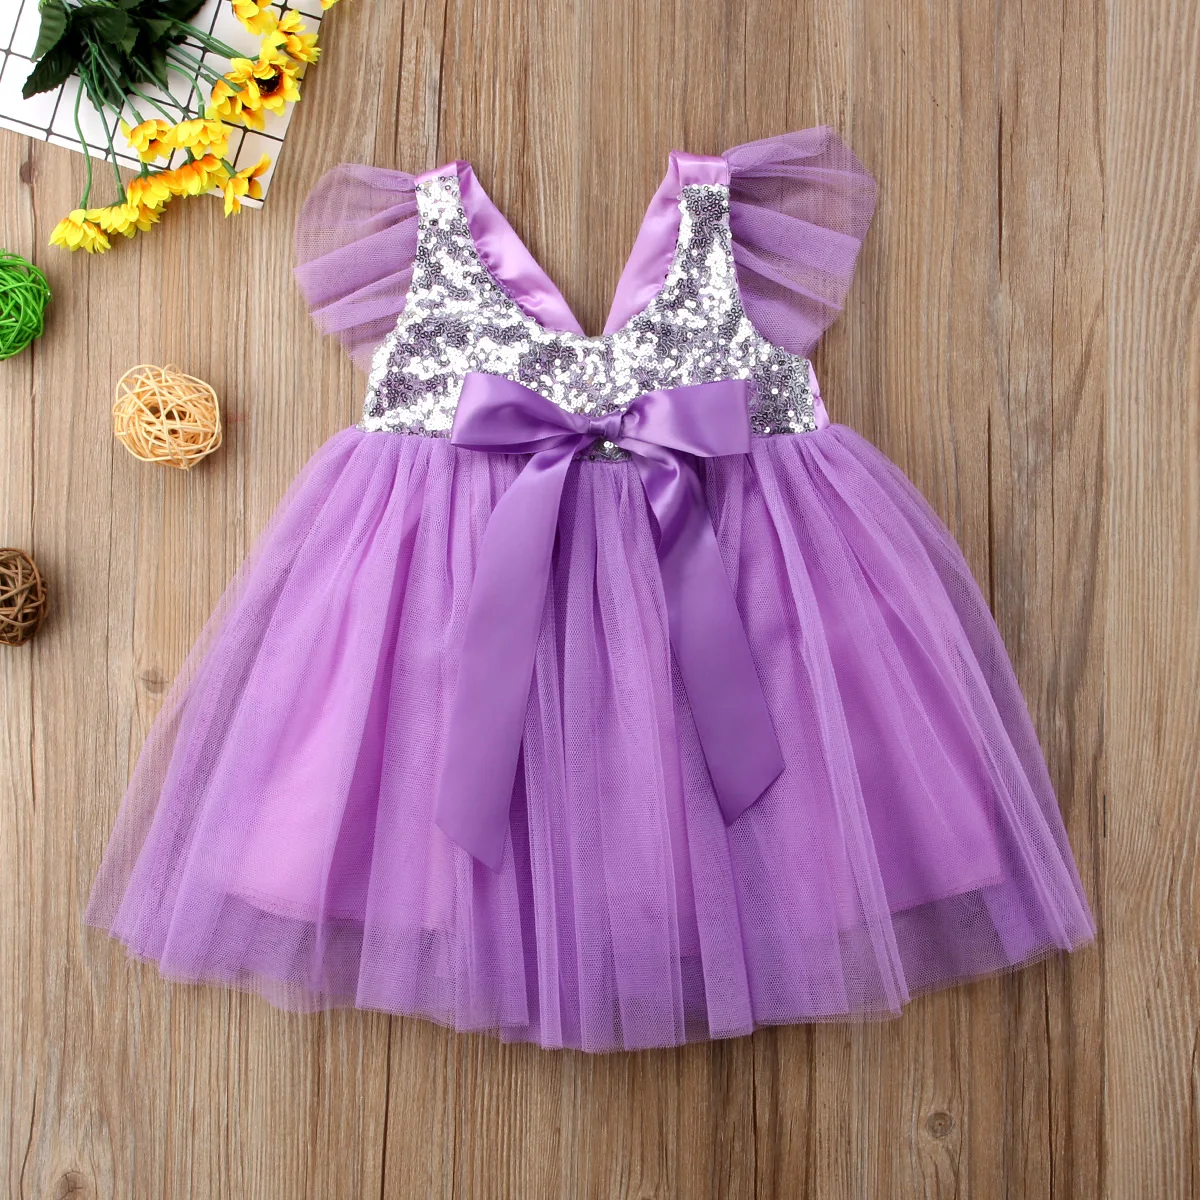 Прекрасная девушка принцесса платье с блестками бантом фатиновые платья-пачки розового и фиолетового цветов одежда для малышей для девочек свадебное нарядное вечерние бальное платье